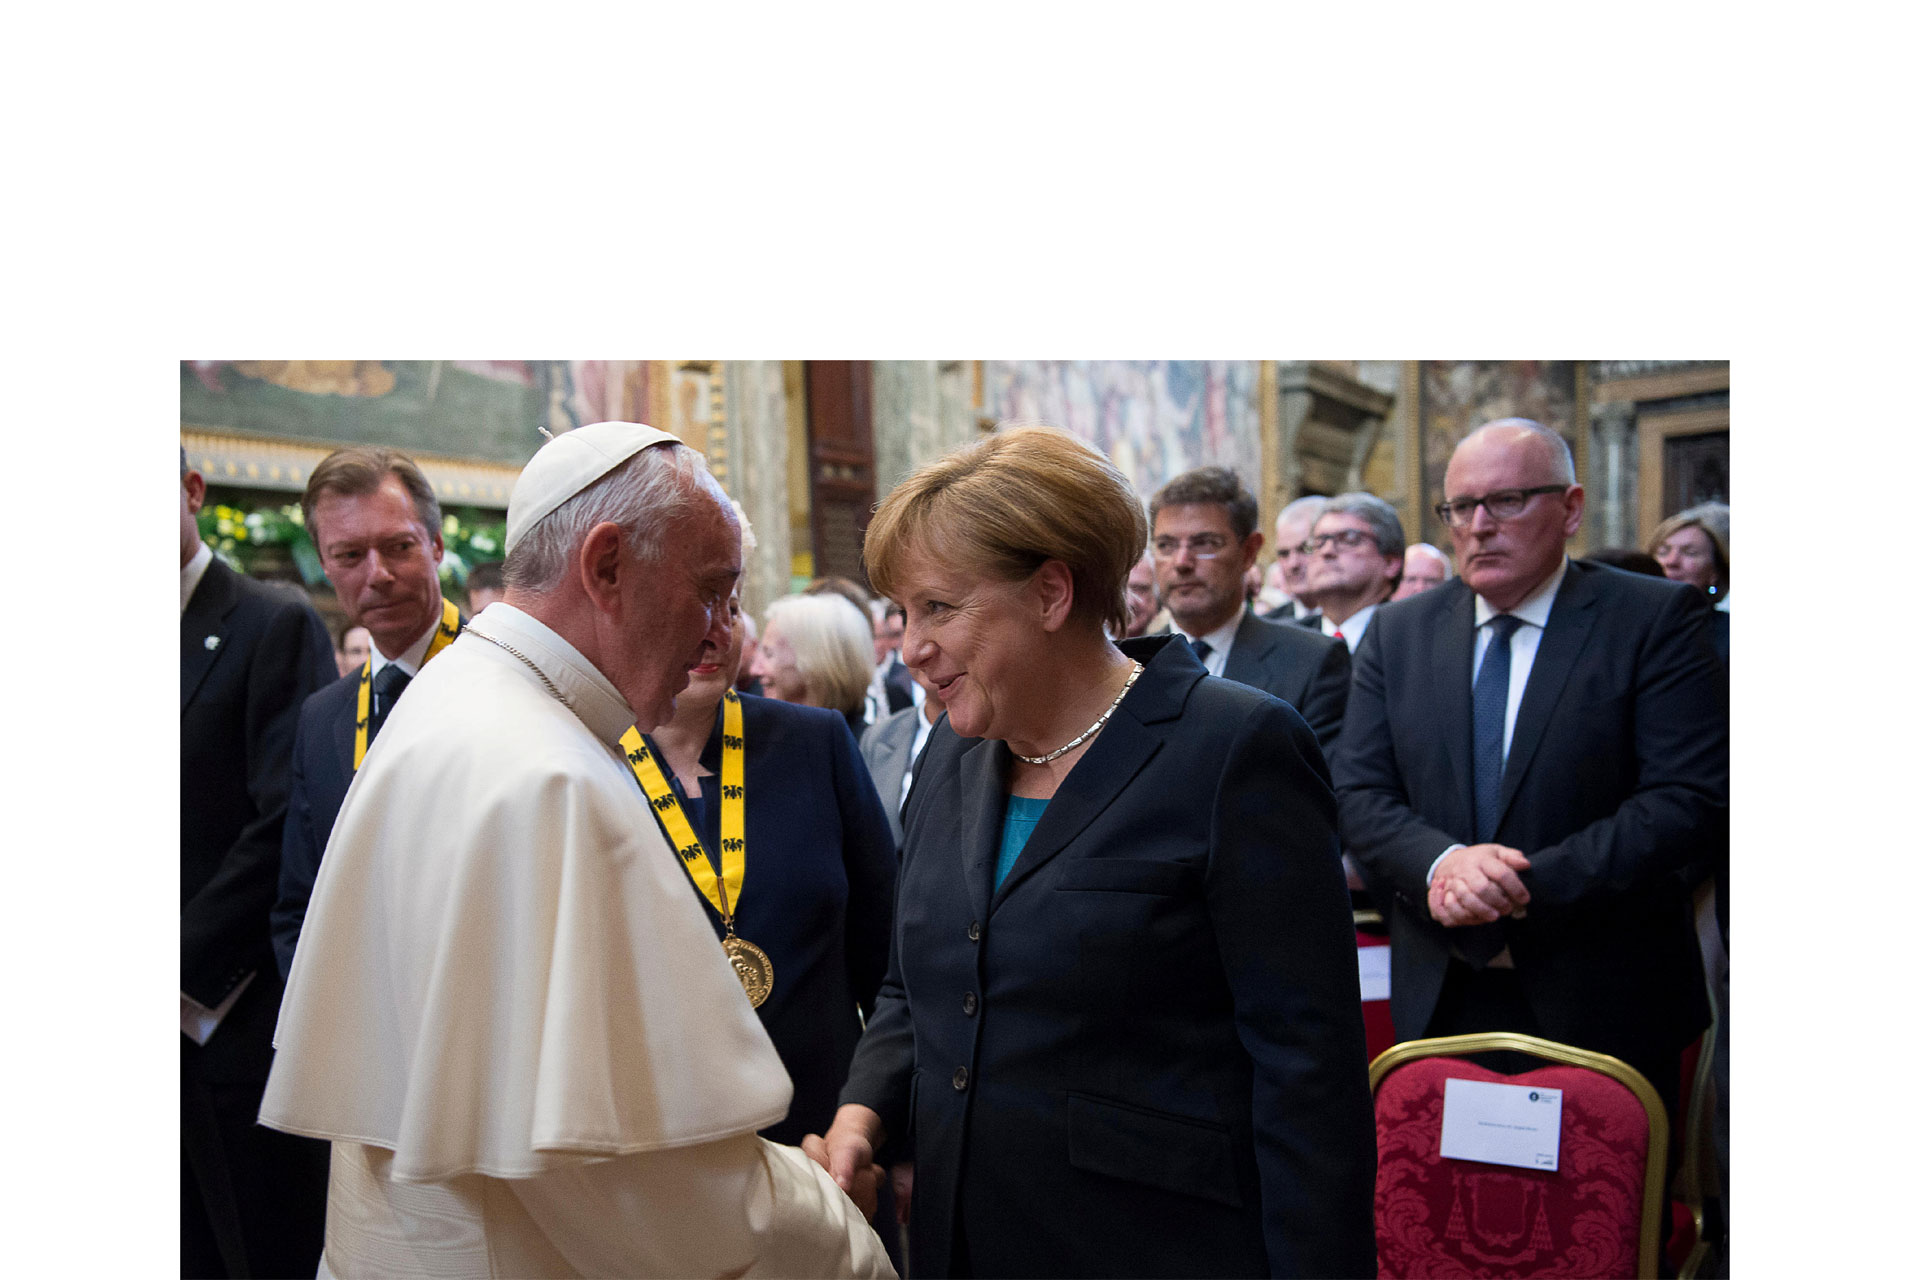 El pontífice continúa abogando por una Europa unida e incluyente, que no discrimine